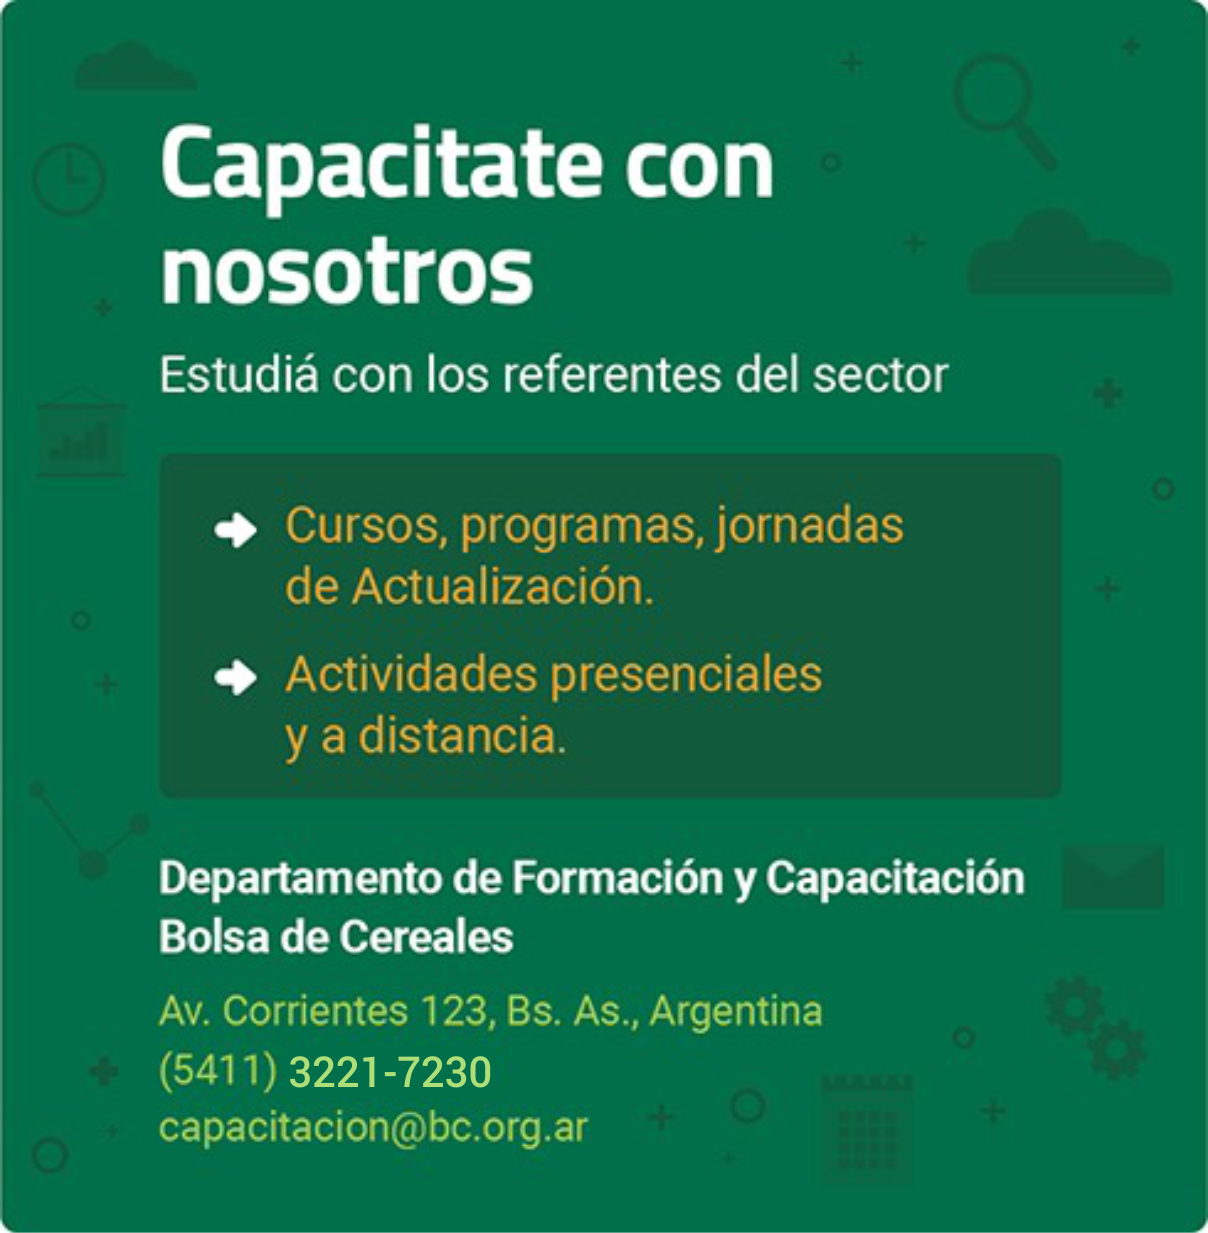 Capacitate_con_nosotros